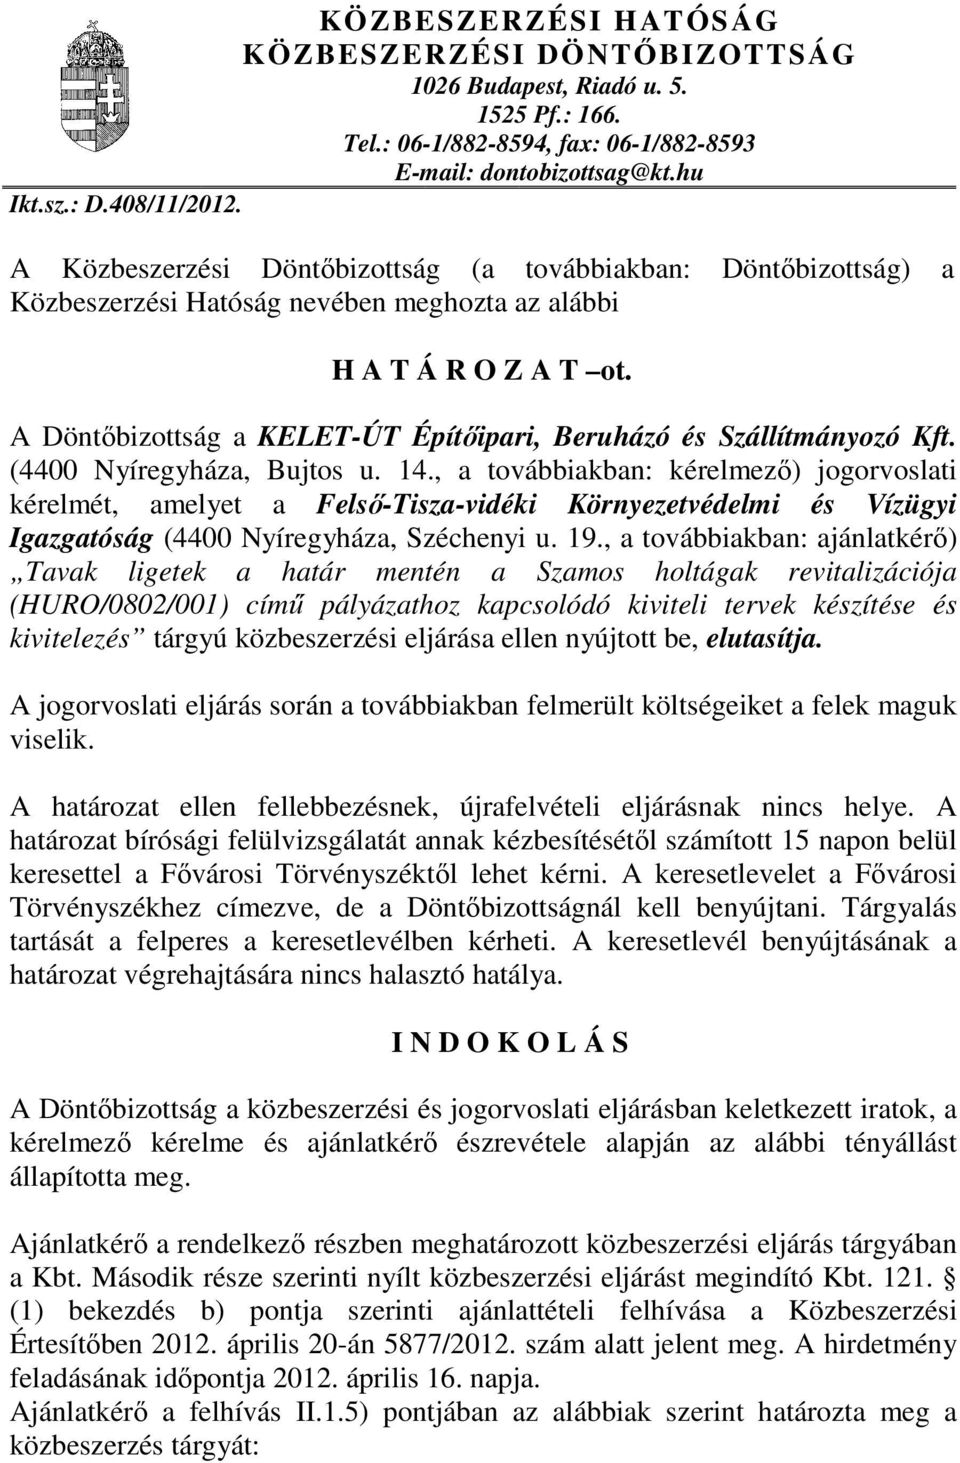 A Döntıbizottság a KELET-ÚT Építıipari, Beruházó és Szállítmányozó Kft. (4400 Nyíregyháza, Bujtos u. 14.